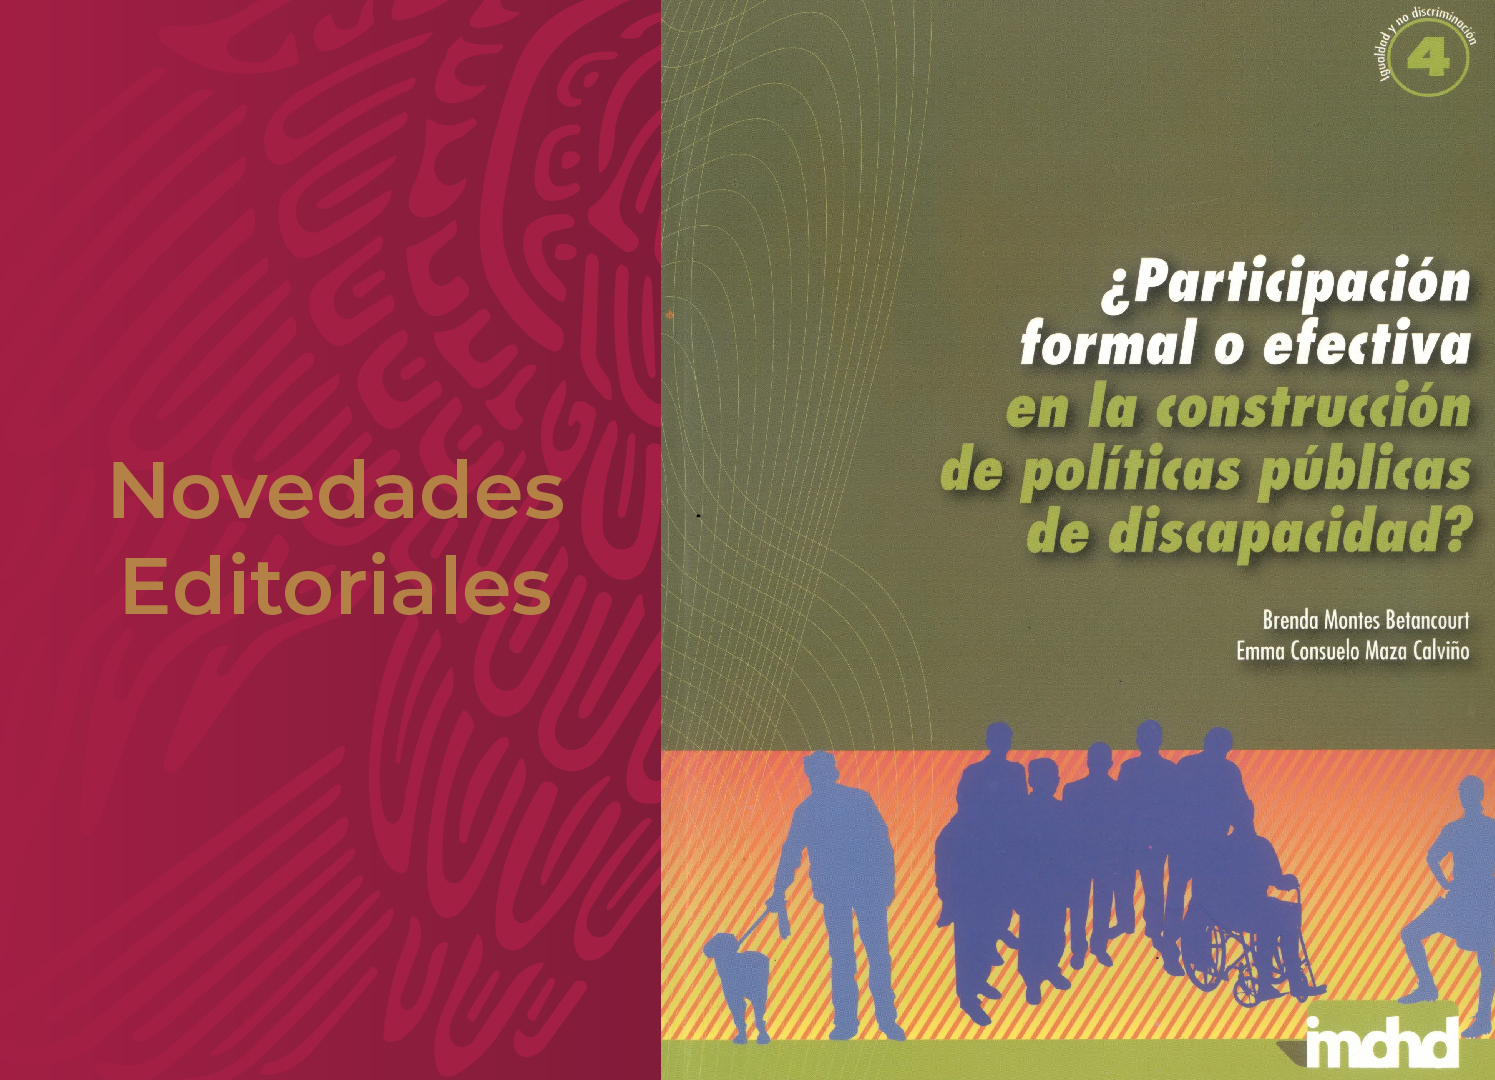 Banner novedades editoriales con fotografía del libro "¿Participación formal o efectiva en la construcción de políticas públicas de discapacidad?"